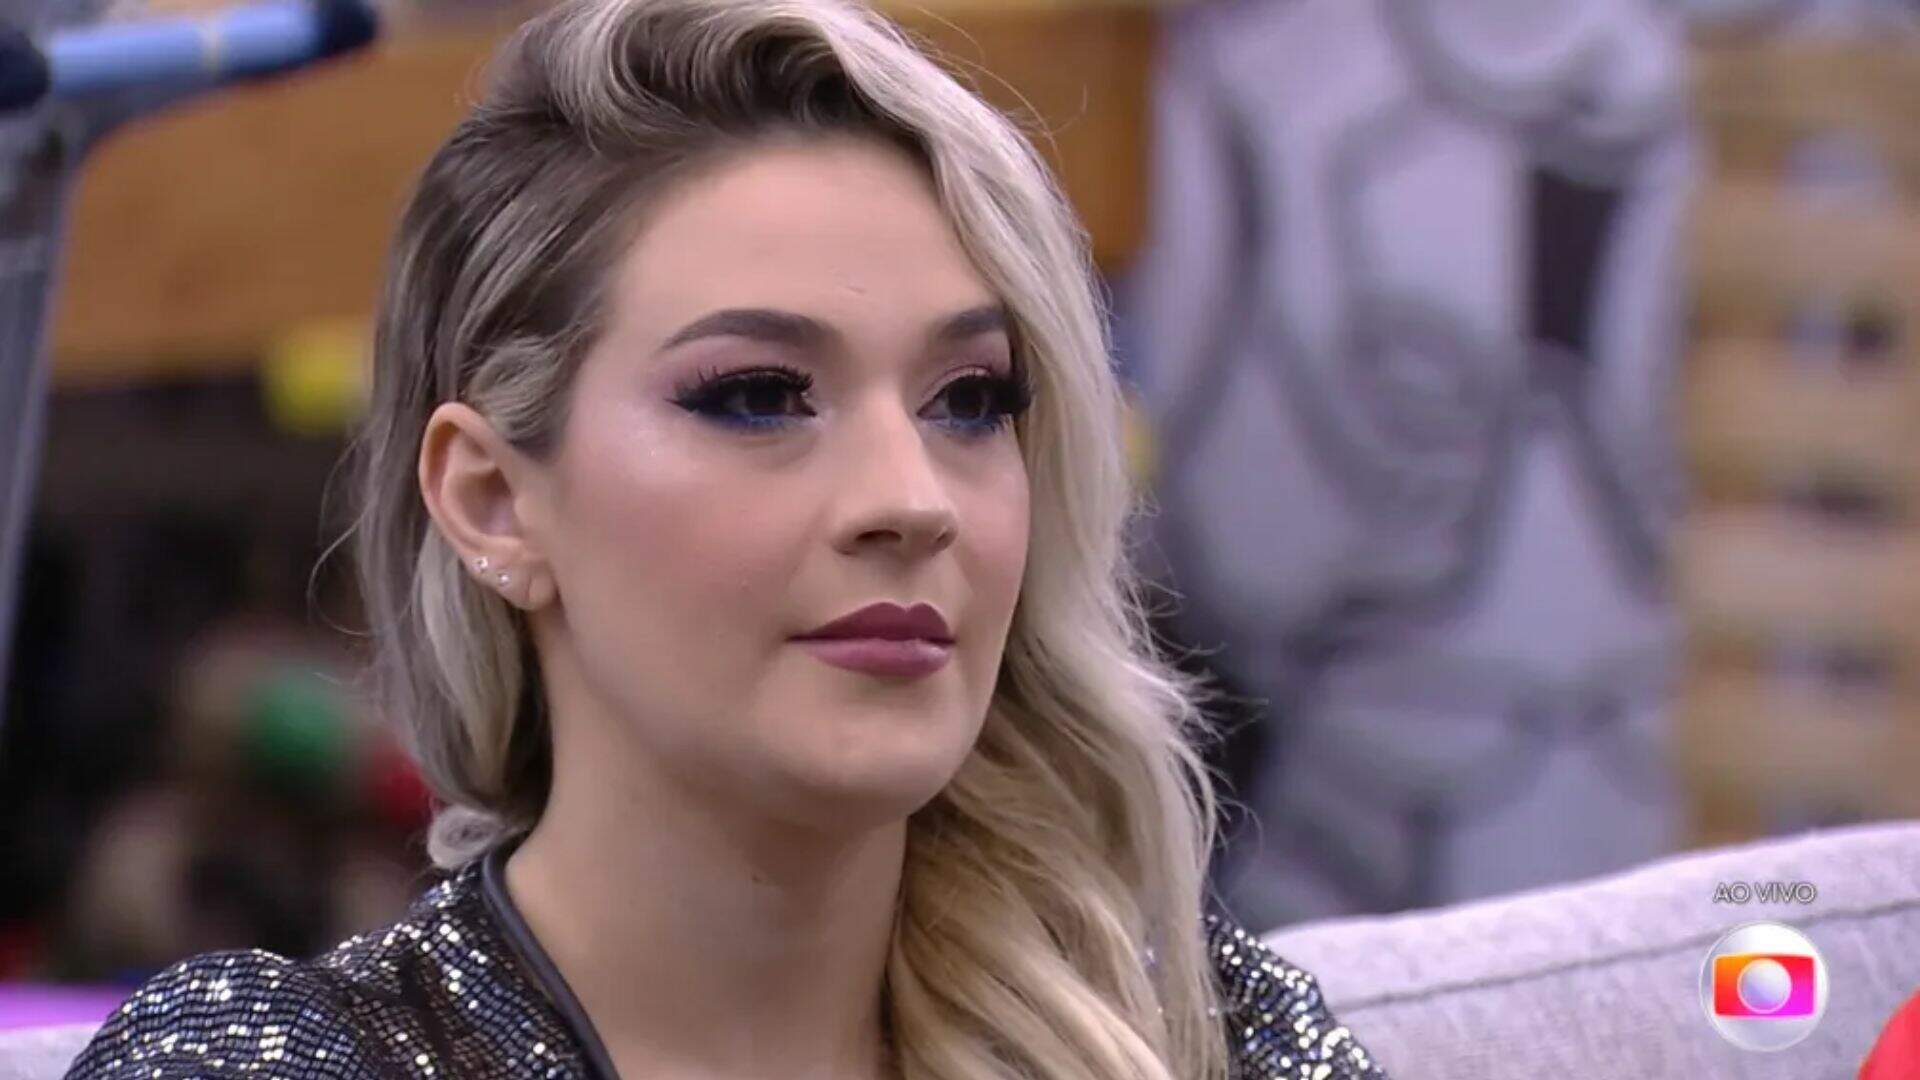 BBB 23: Marília Miranda revela ter mentido no “Jogo da Discórdia” após se sentir rejeitada - Metropolitana FM